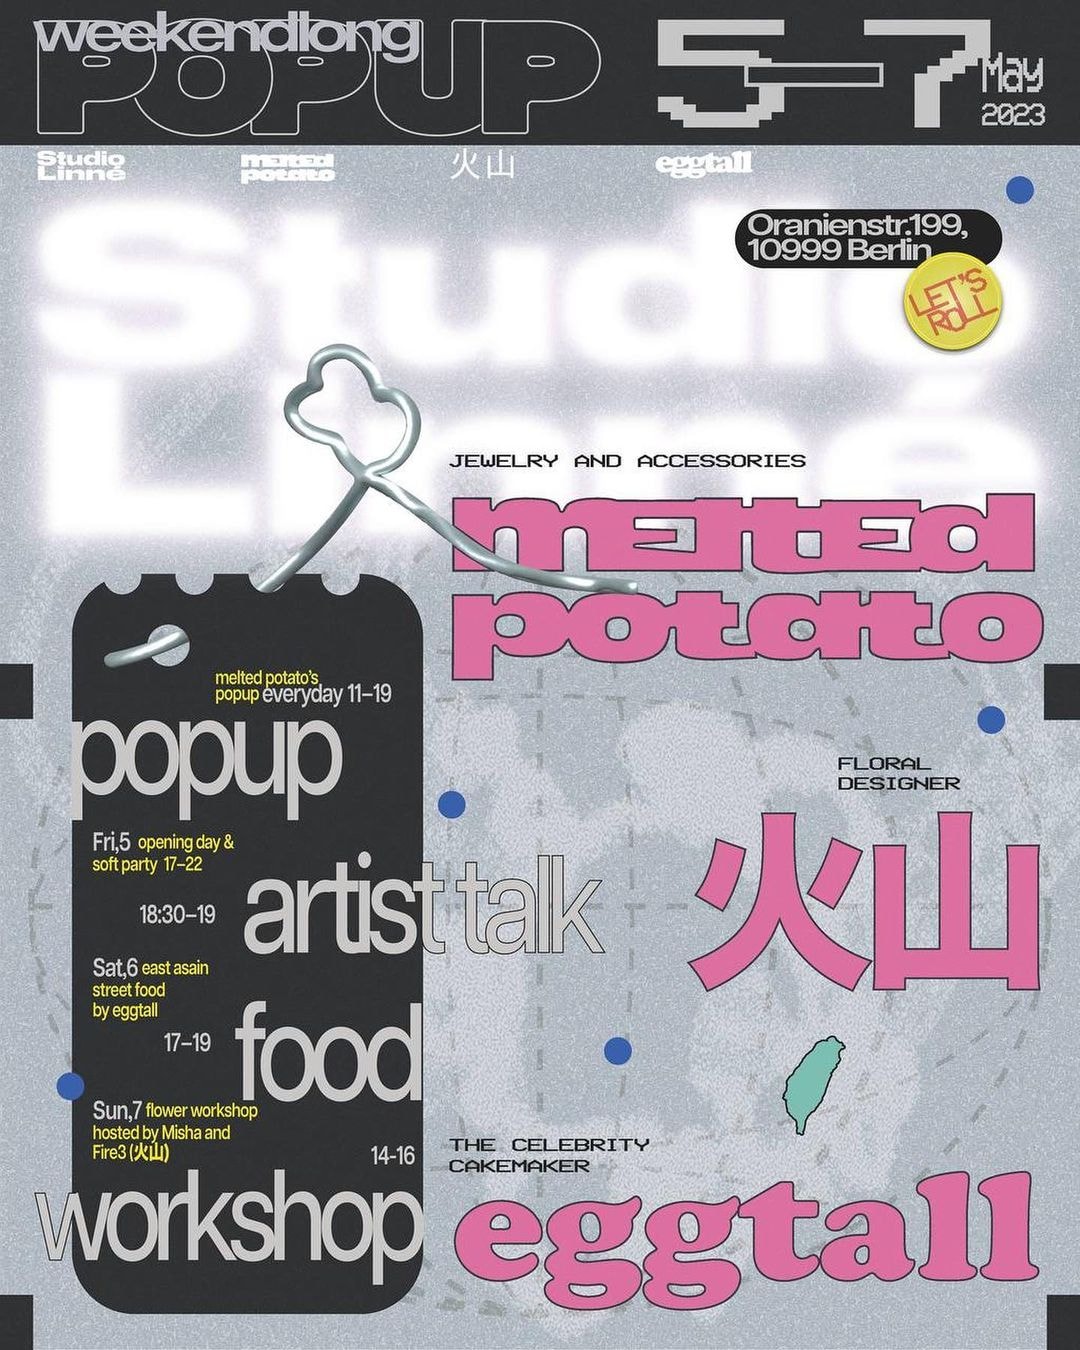 人氣品牌 melted potato、eggtall、火山花店將於柏林舉辦期間限定 Pop-Up